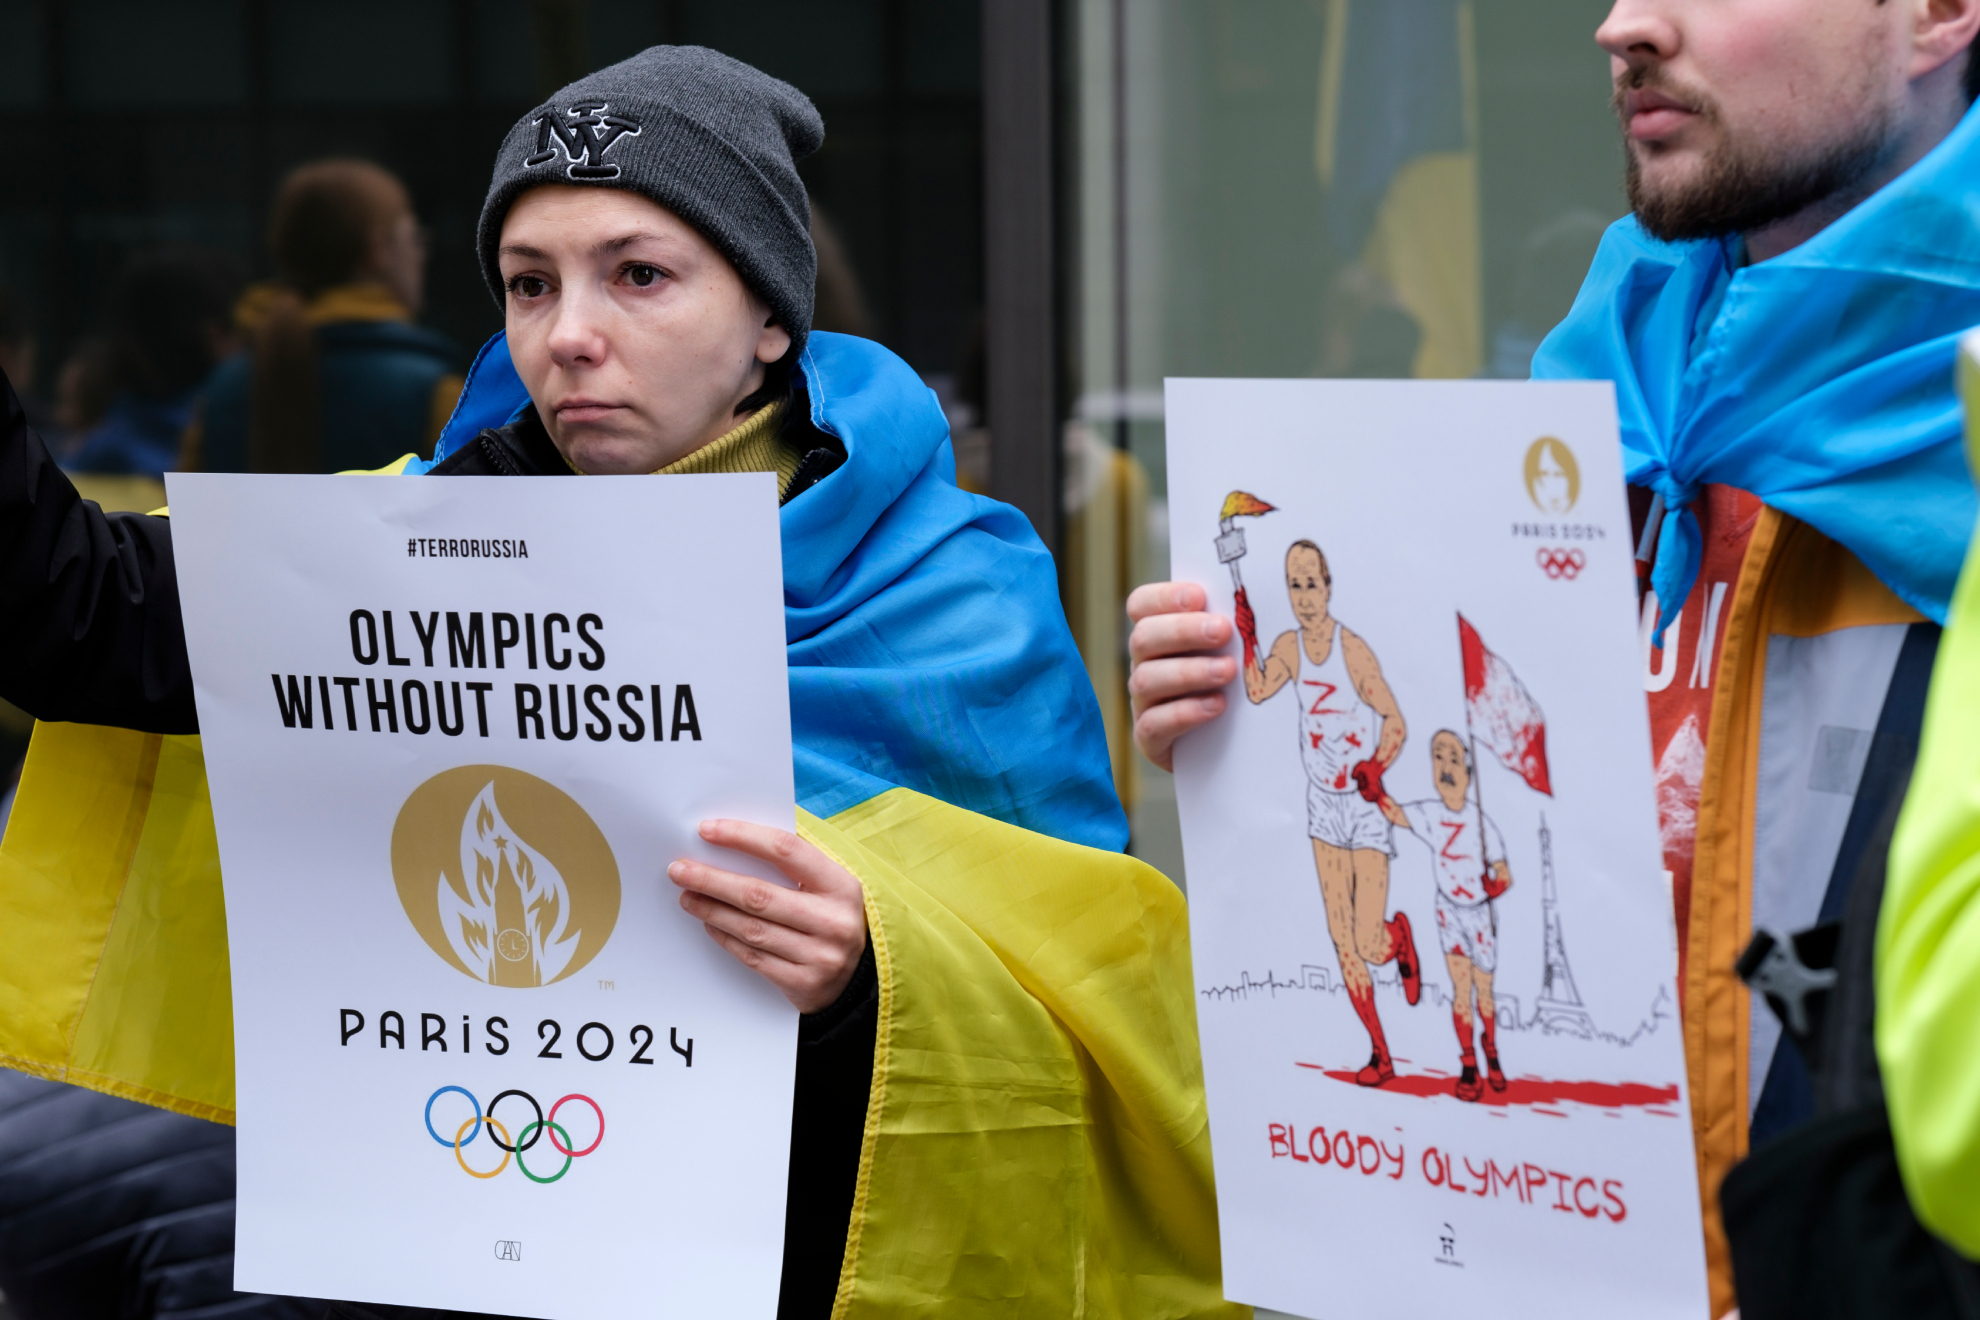 Un grupo de ucranianos se manifiesta frente a la sede europea del Comité Olímpico Internacional (COI), el 29 de marzo en Bruselas, Bélgica.